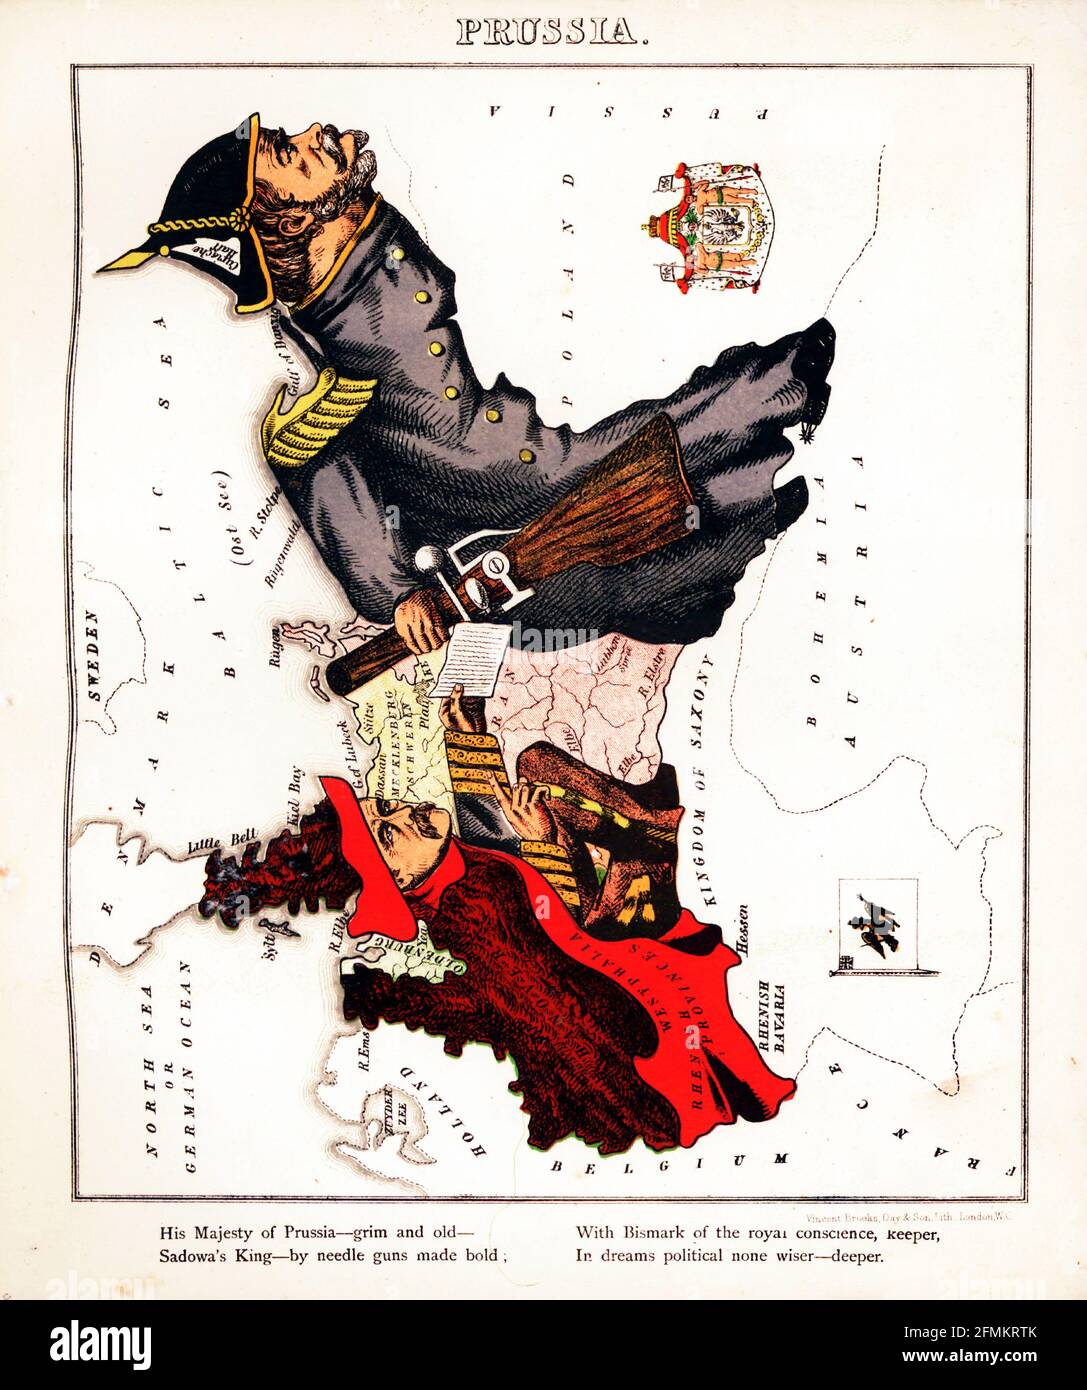 Prussia – divertimento geografico. Mappa satirica / cartografica illustrata. Pubblicato a Londra dalla ditta di Hodder e Stoughton nel 1869. Foto Stock